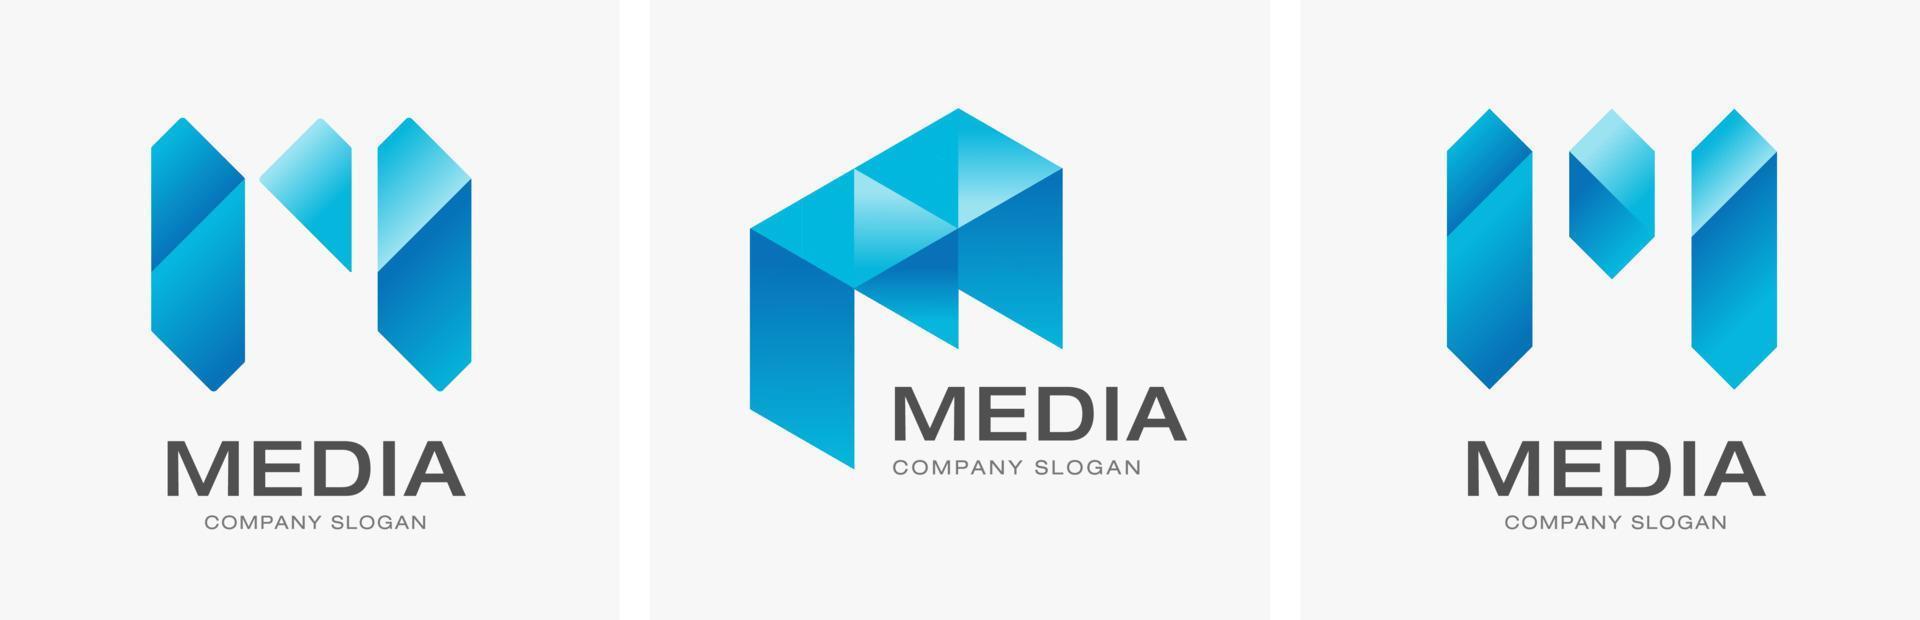 lettre m concept media technologie logo design vecteur